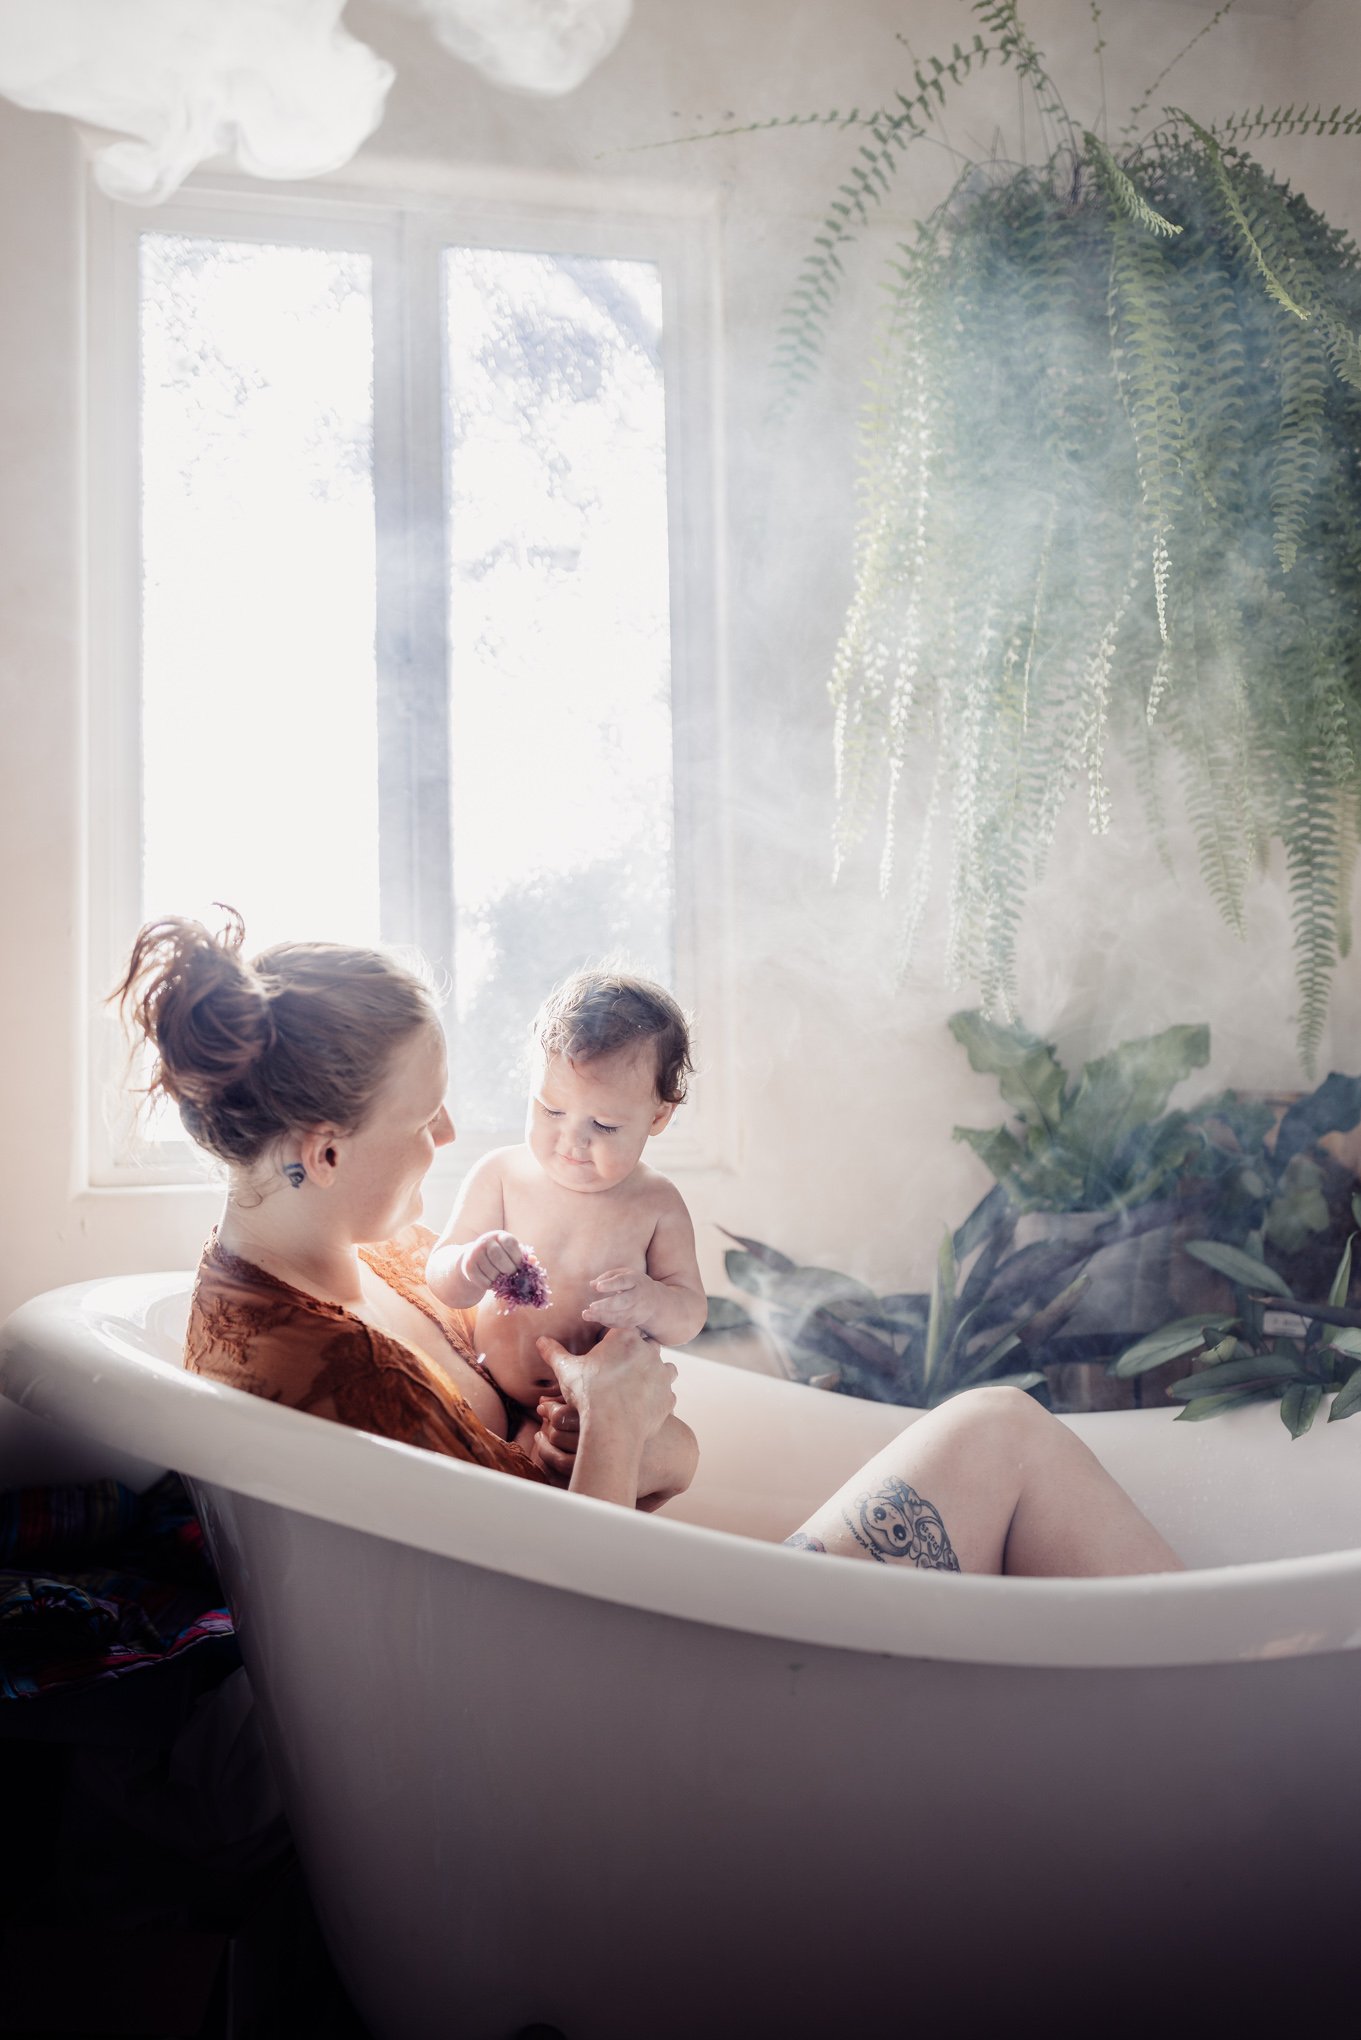  Milk Bath photos San Diego for maternity photos or nursing with Morning Owl Fine Art Photography San Diego 